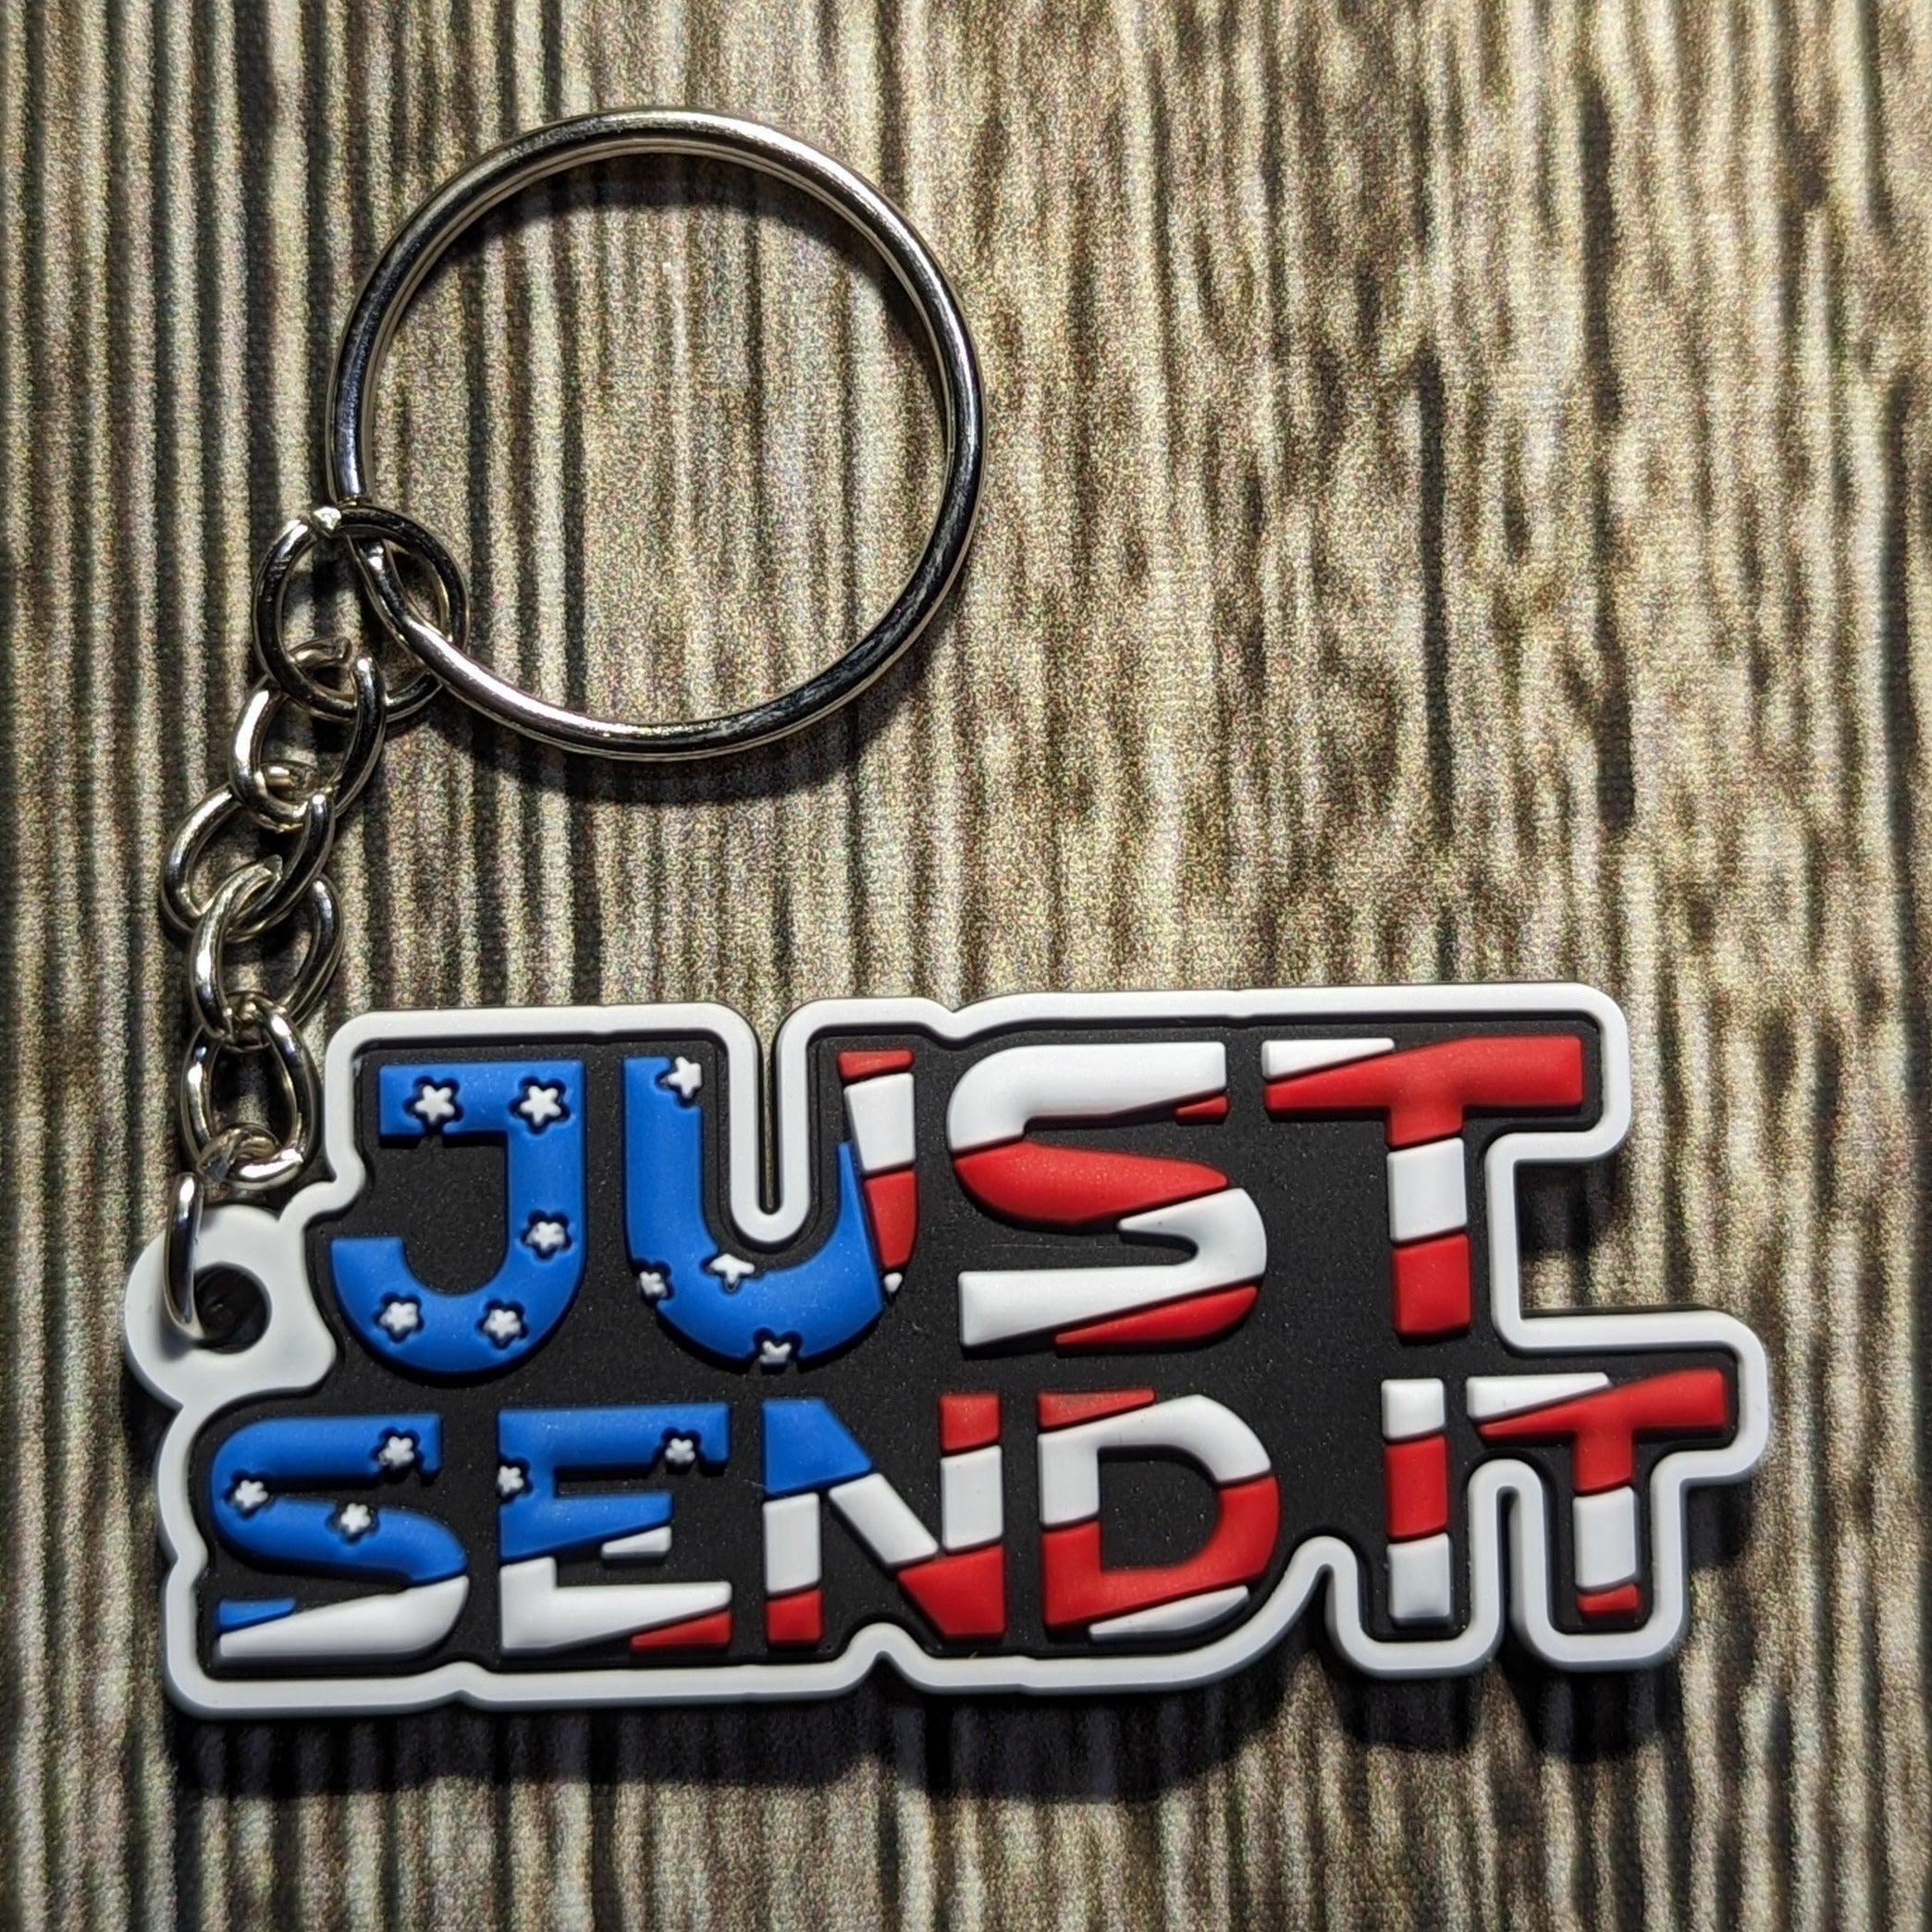 Key Chain - Just Send It